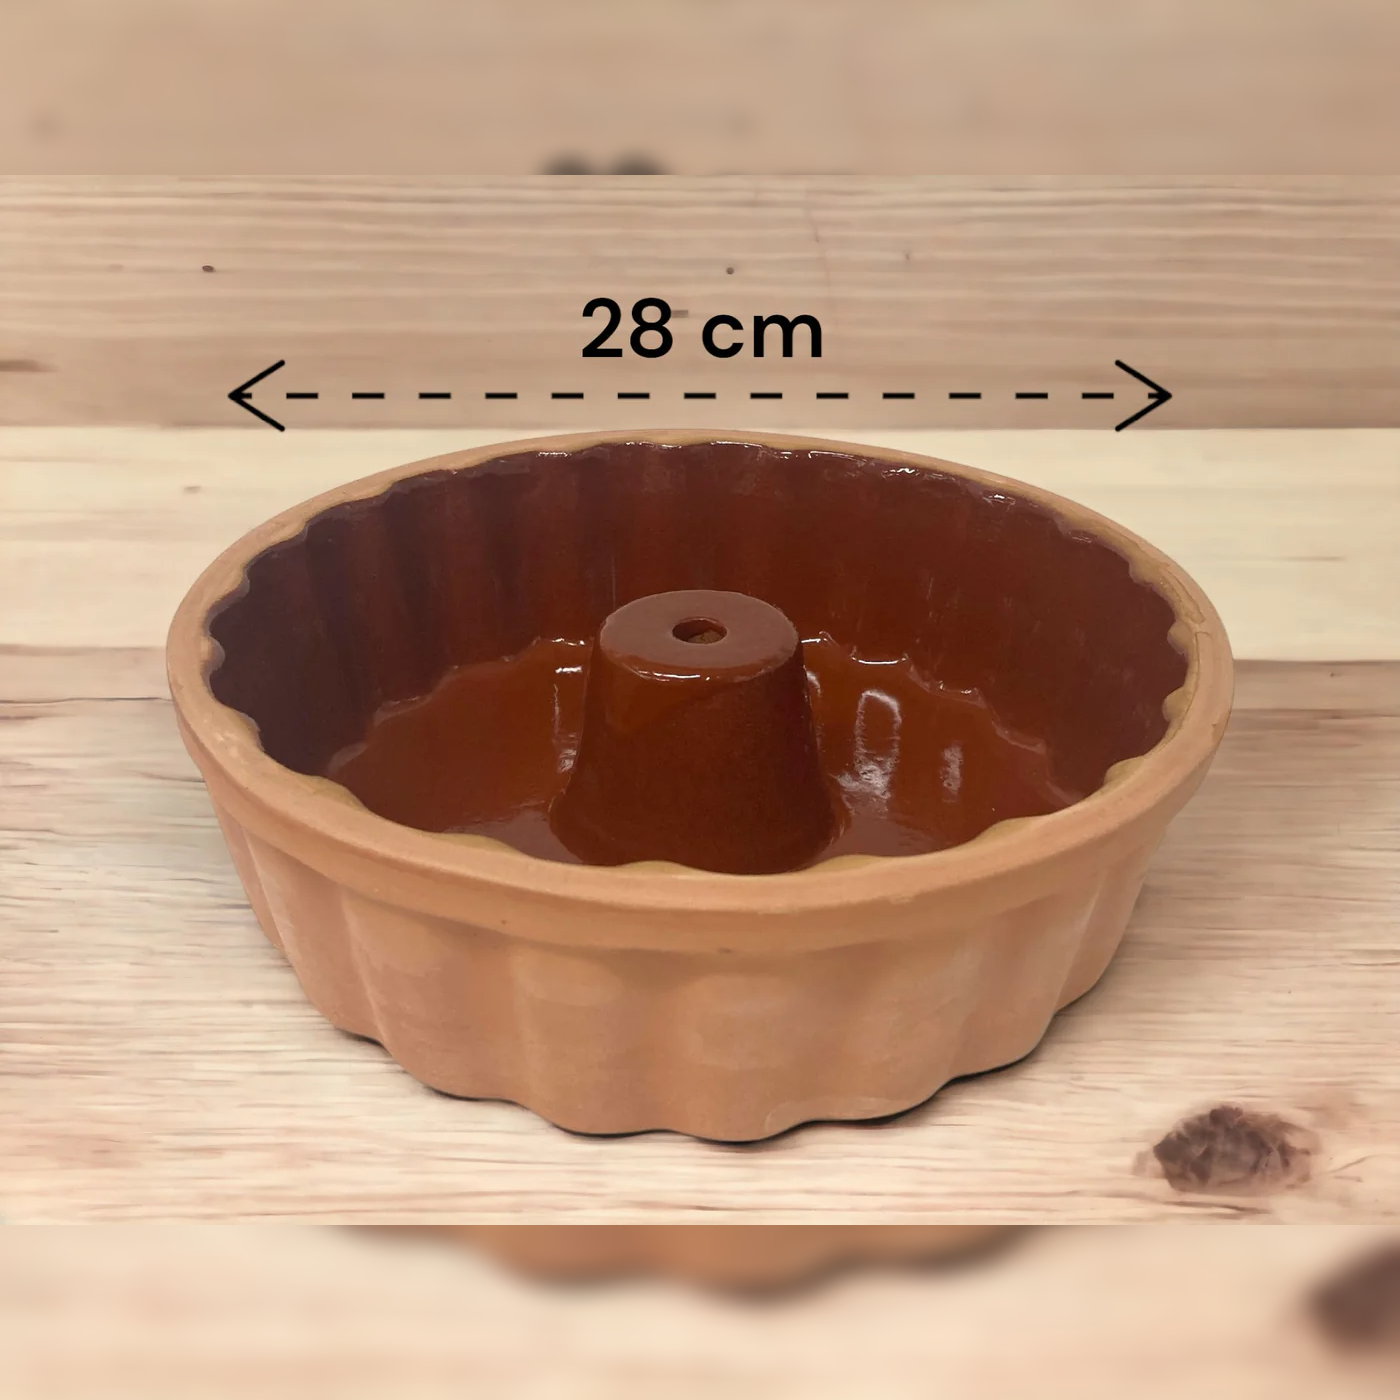 Natural Terracotta Cake Pan 28 cm - Lunaz Shop